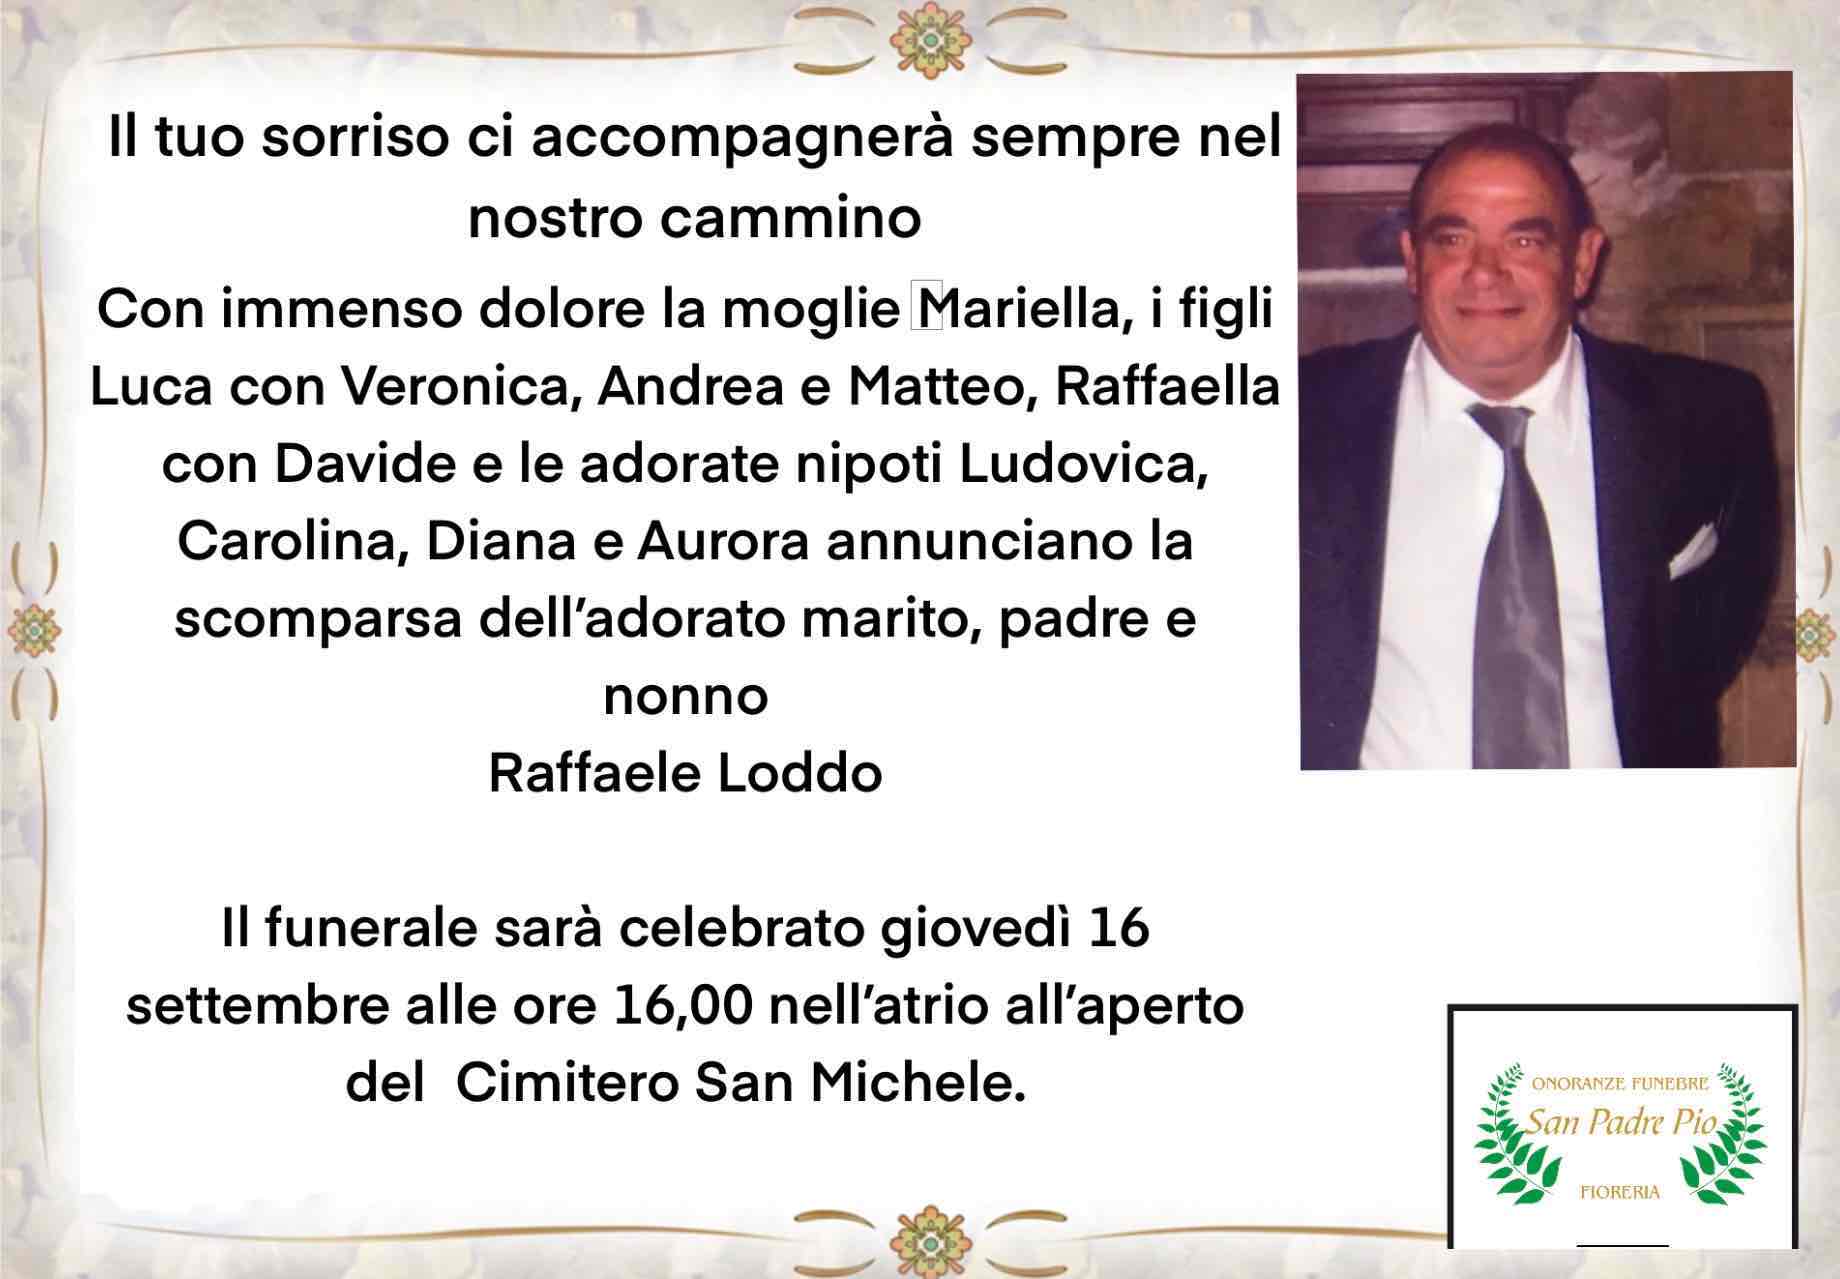 Raffaele Loddo